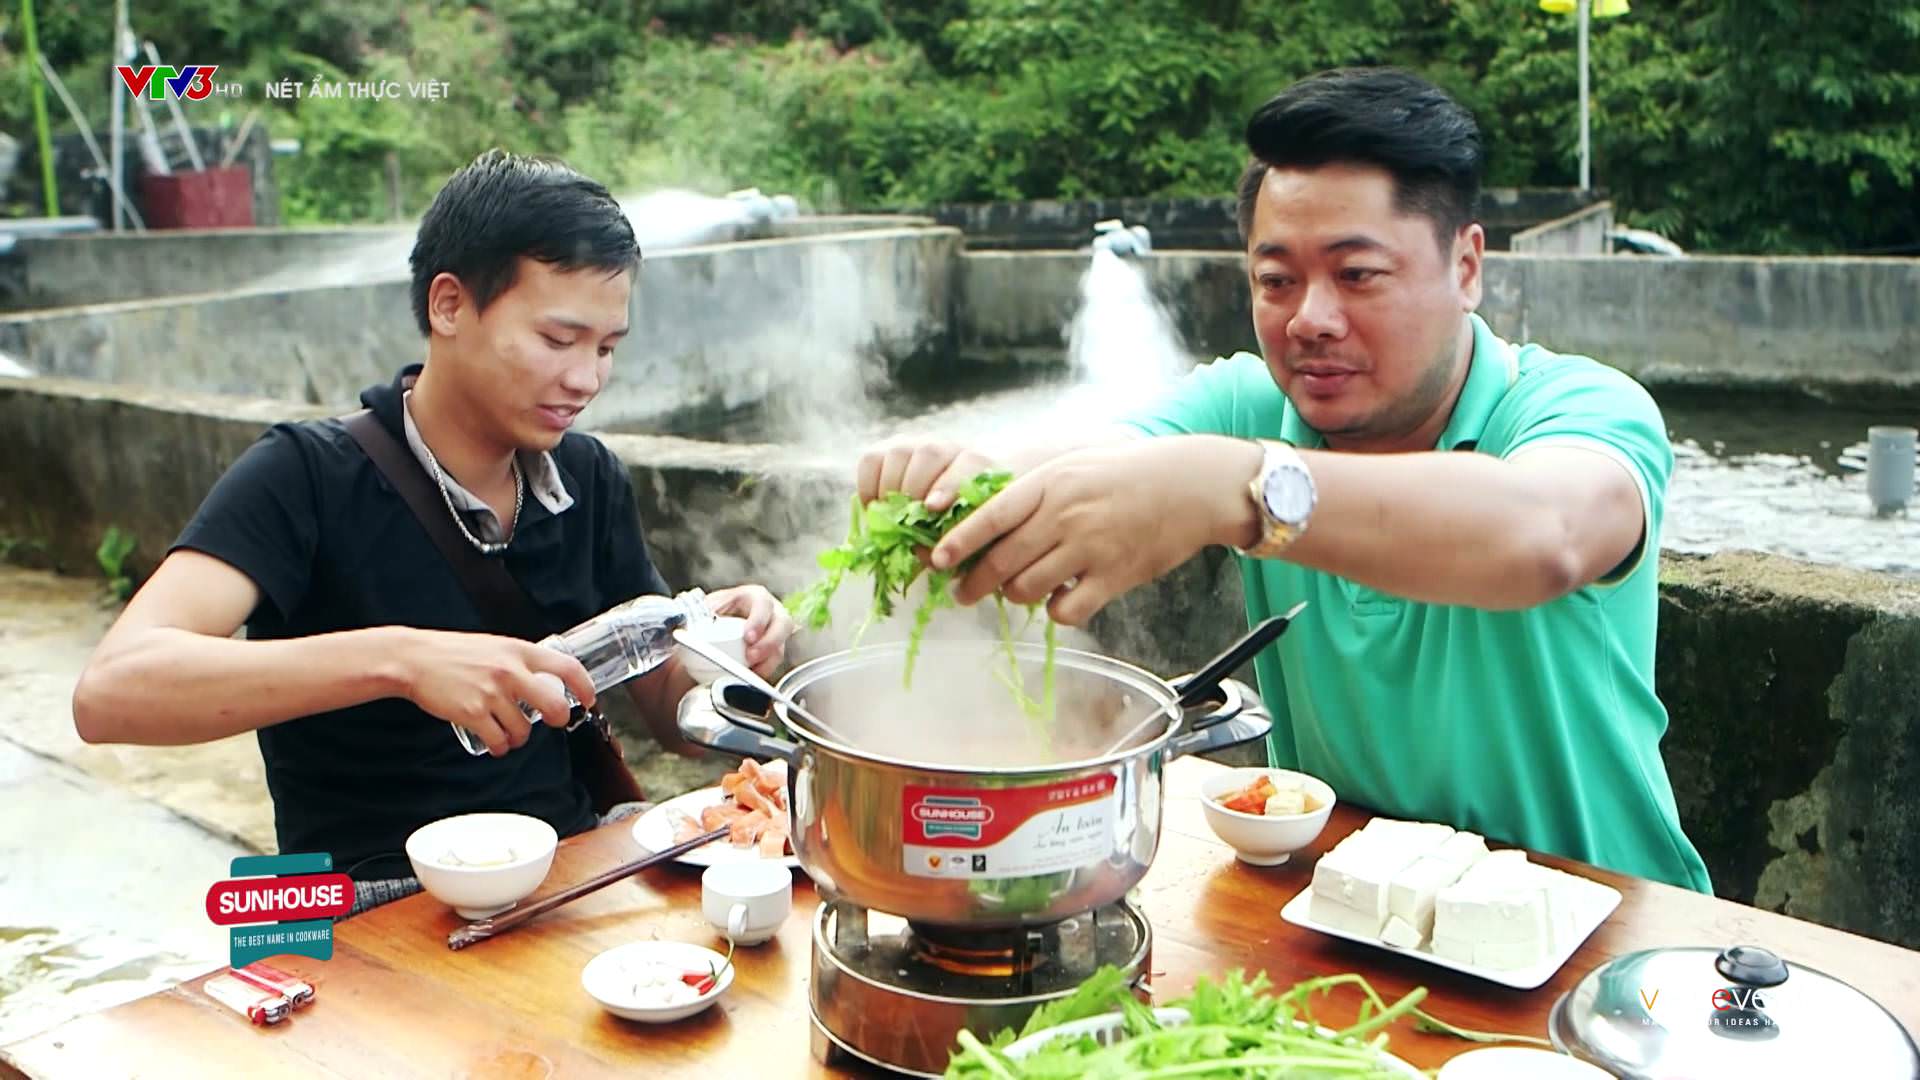 Lịch phát sóng chương trình “Nét ẩm thực Việt” 1